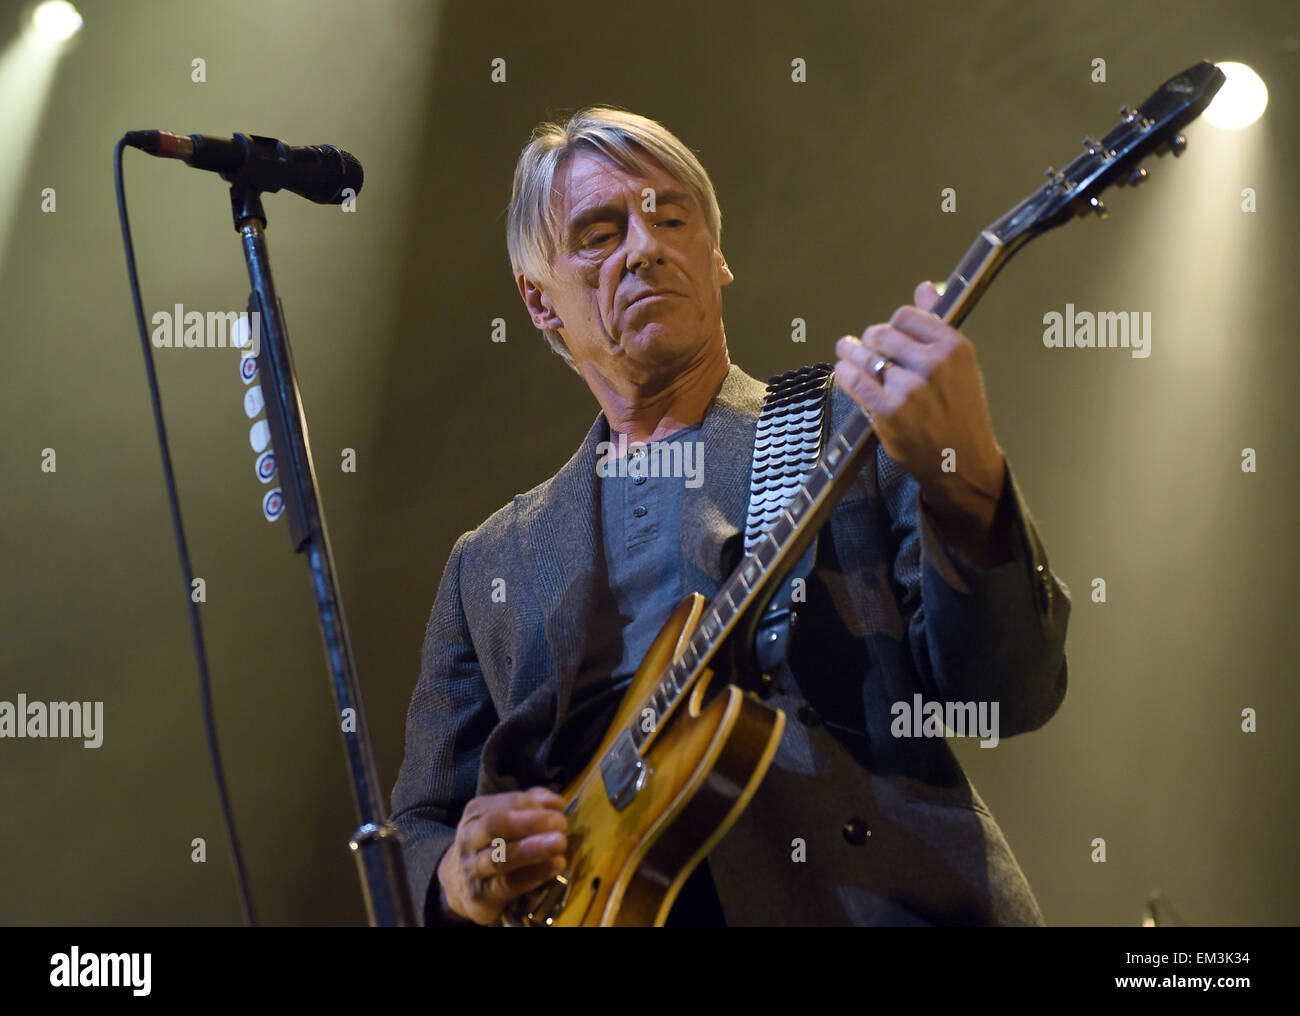 Berlin, Allemagne. Apr 15, 2015. La chanteuse britannique Paul Weller est sur scène dans l'Admiralspalast de Berlin, Allemagne, 15 avril 2015. Photo : BRITTA PEDERSEN/dpa/Alamy Live News Banque D'Images